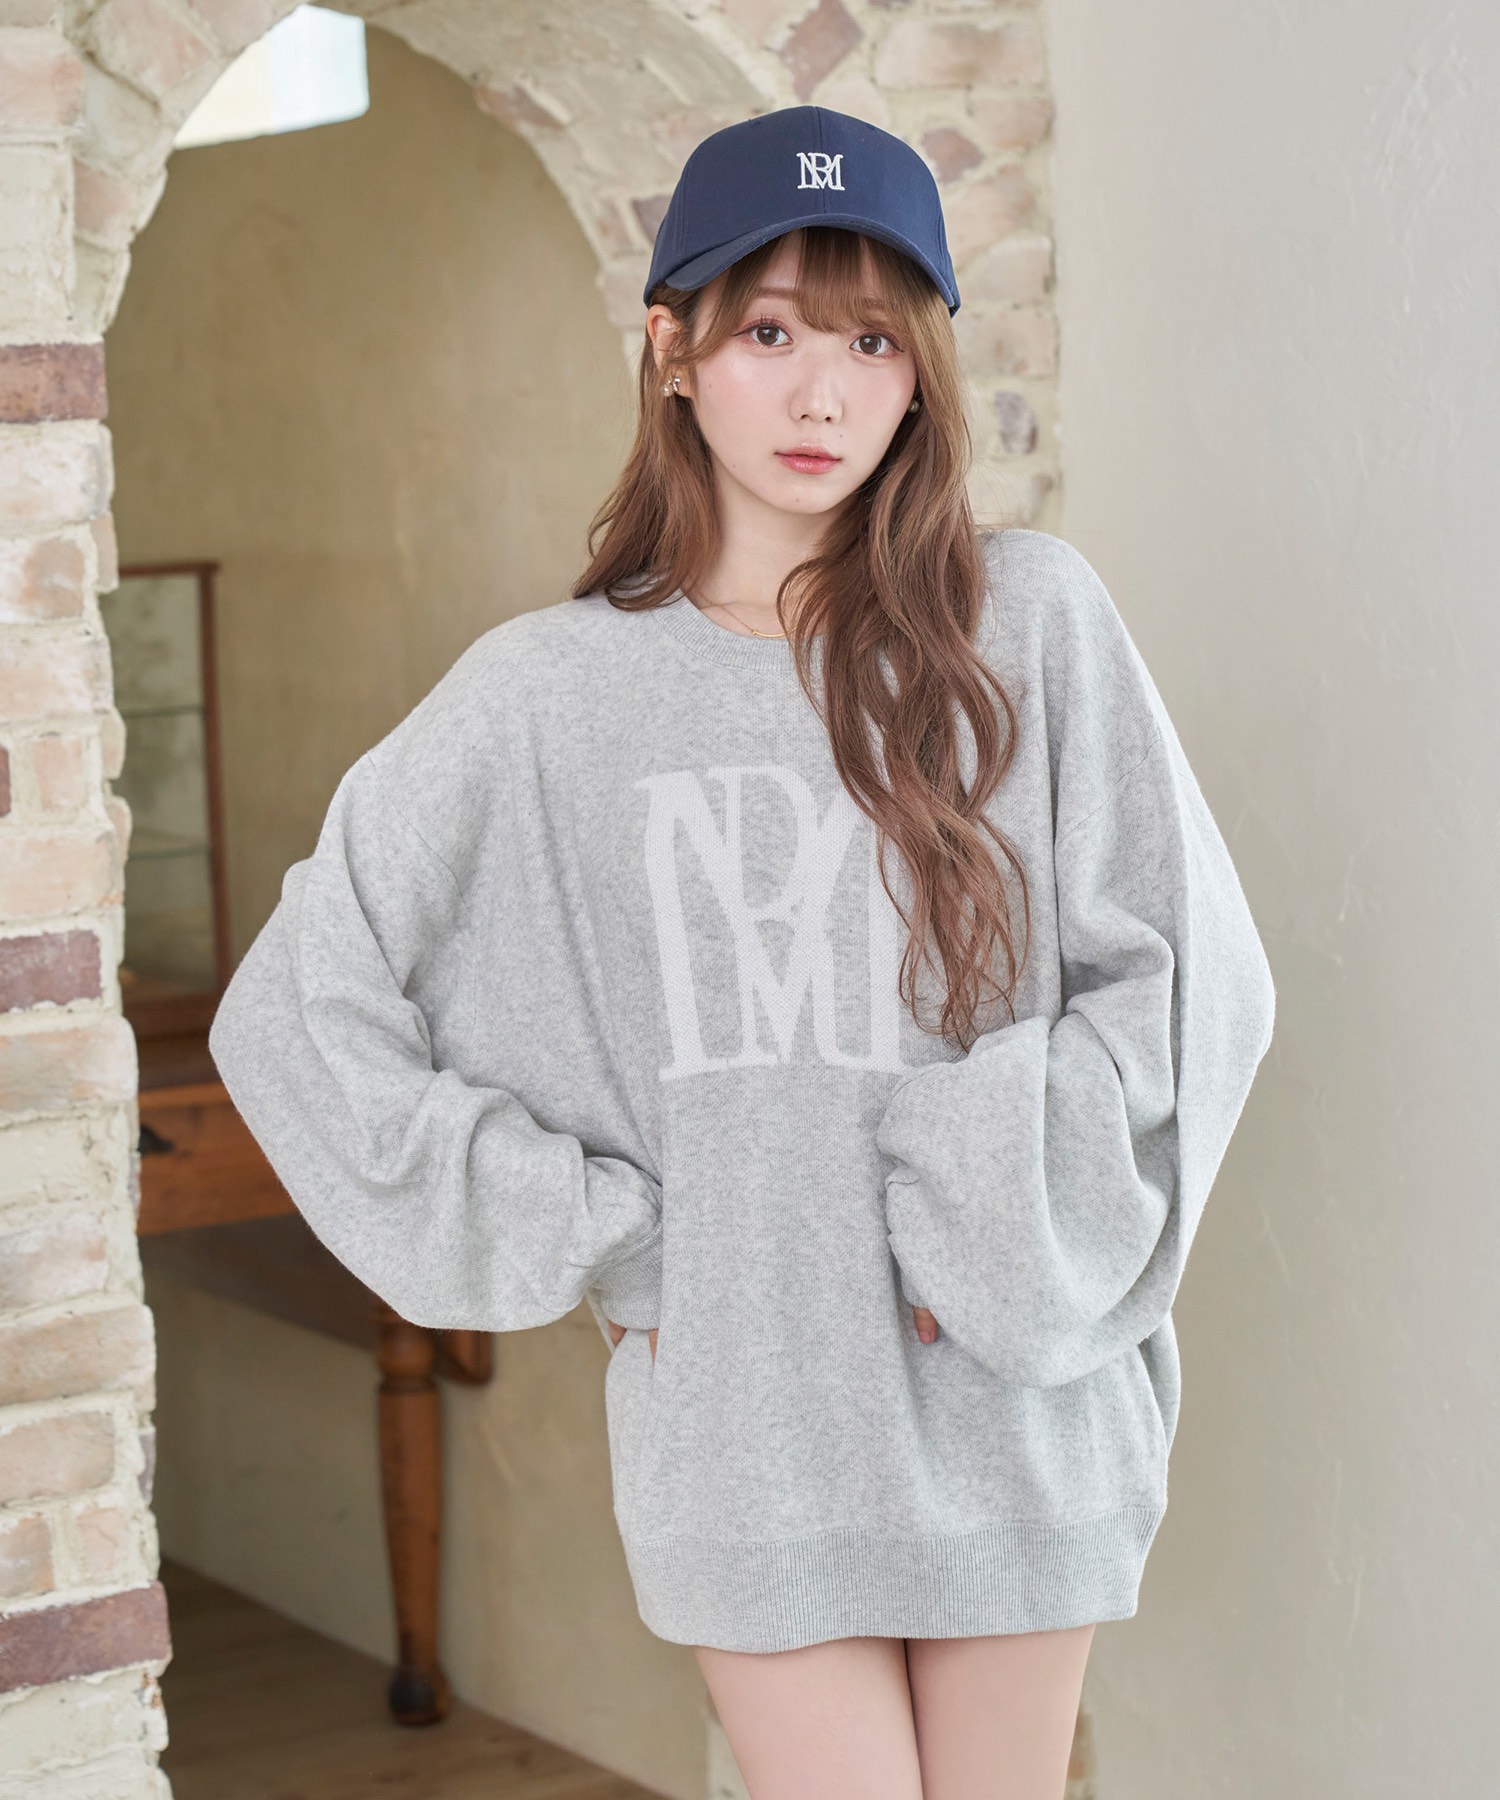 Rosé Muse RM logo knit_L size【navy】